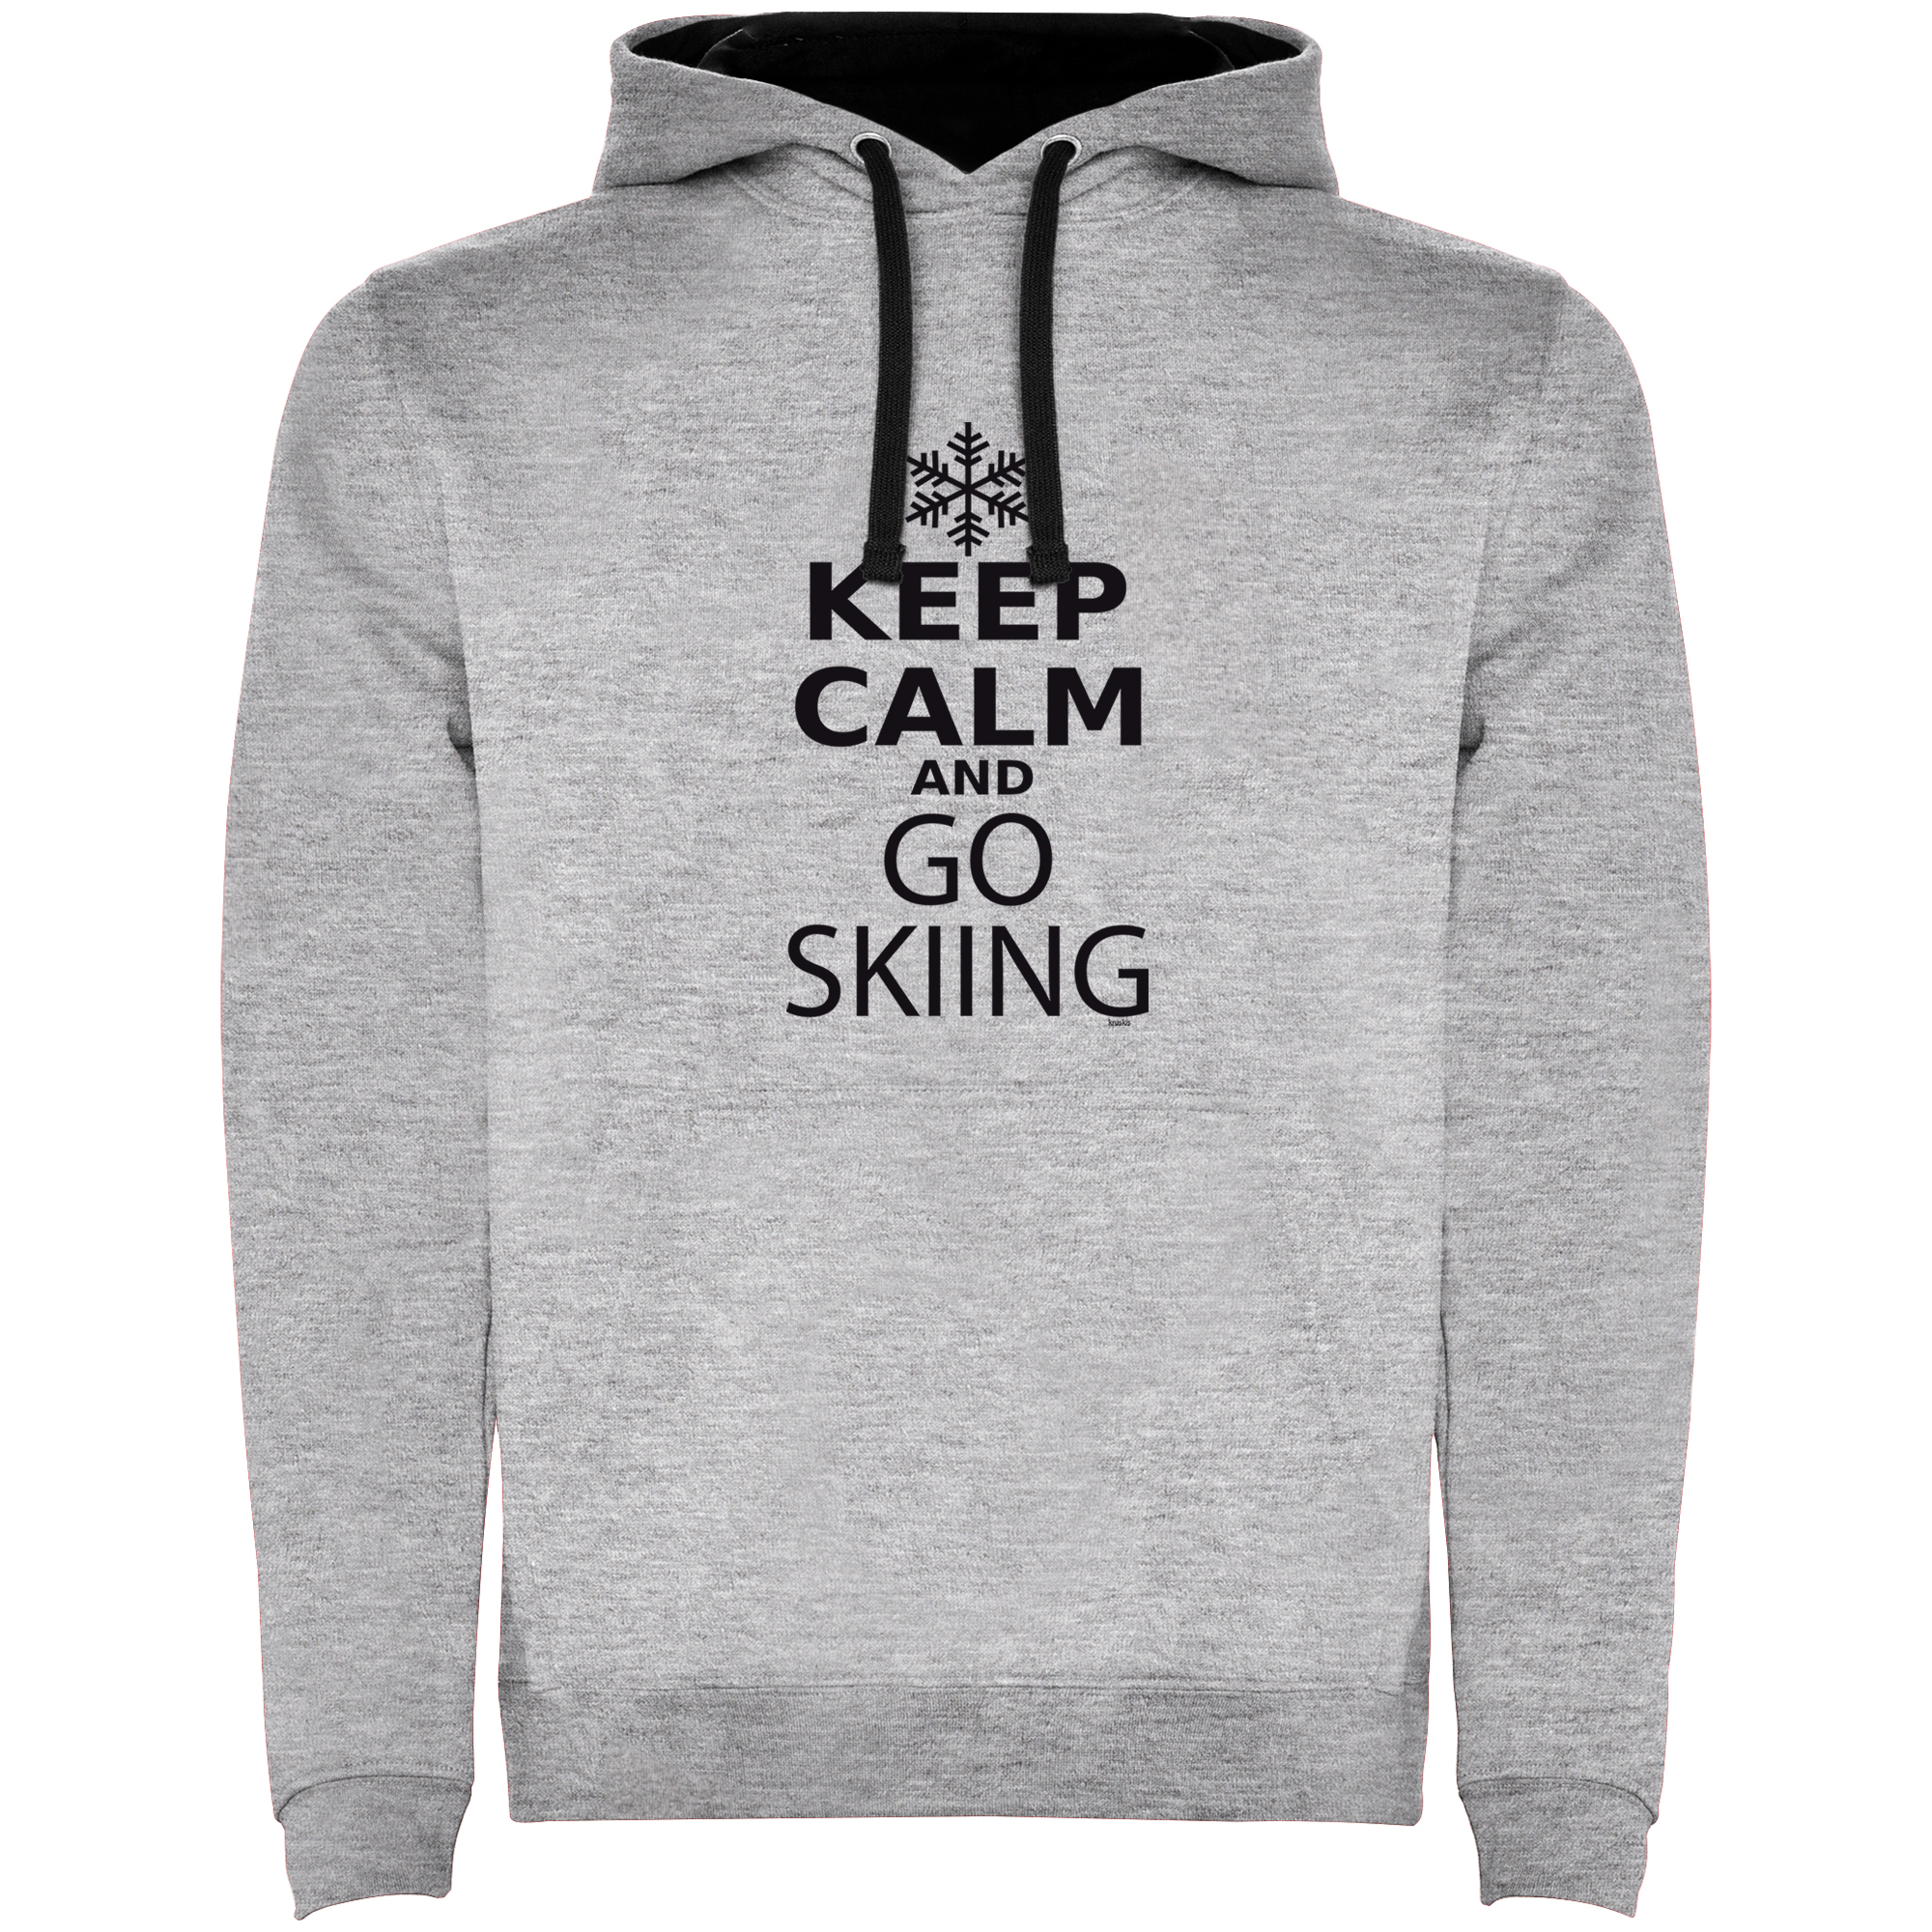 Sweat a Capuche Ski Keep Calm and Go Skiing Unisex